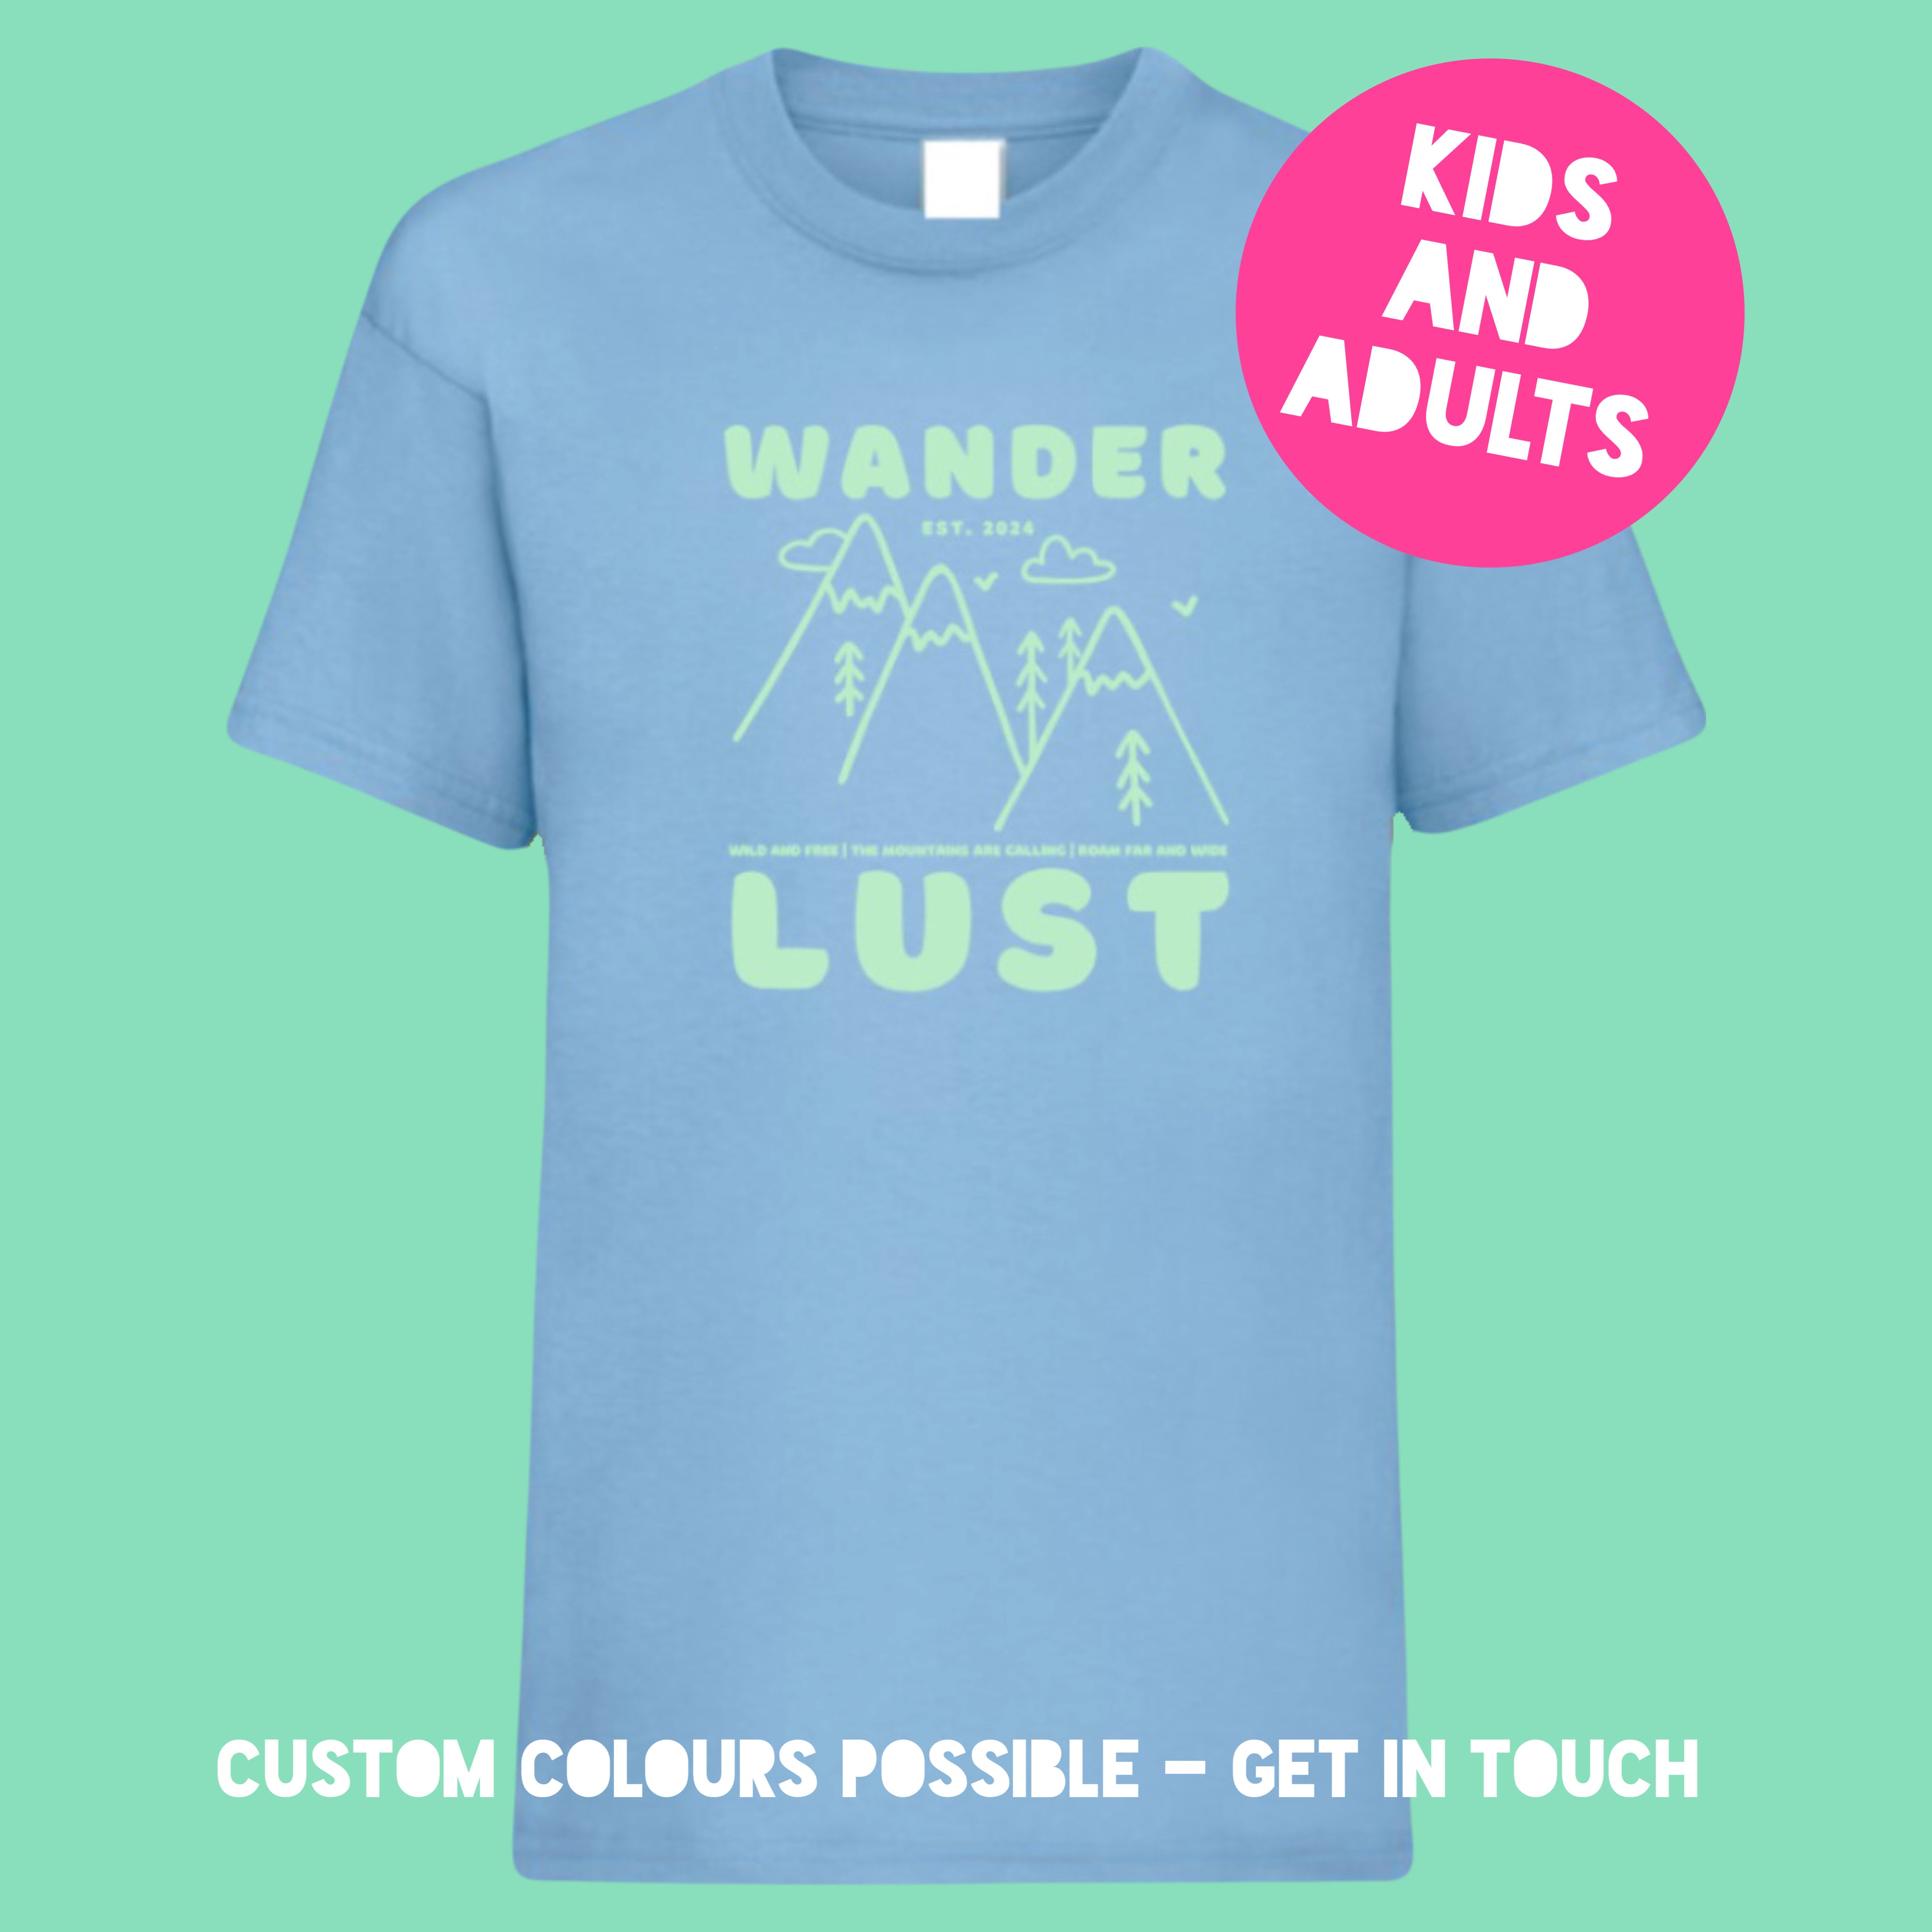 Adults WANDER LUST Light Blue T-Shirt